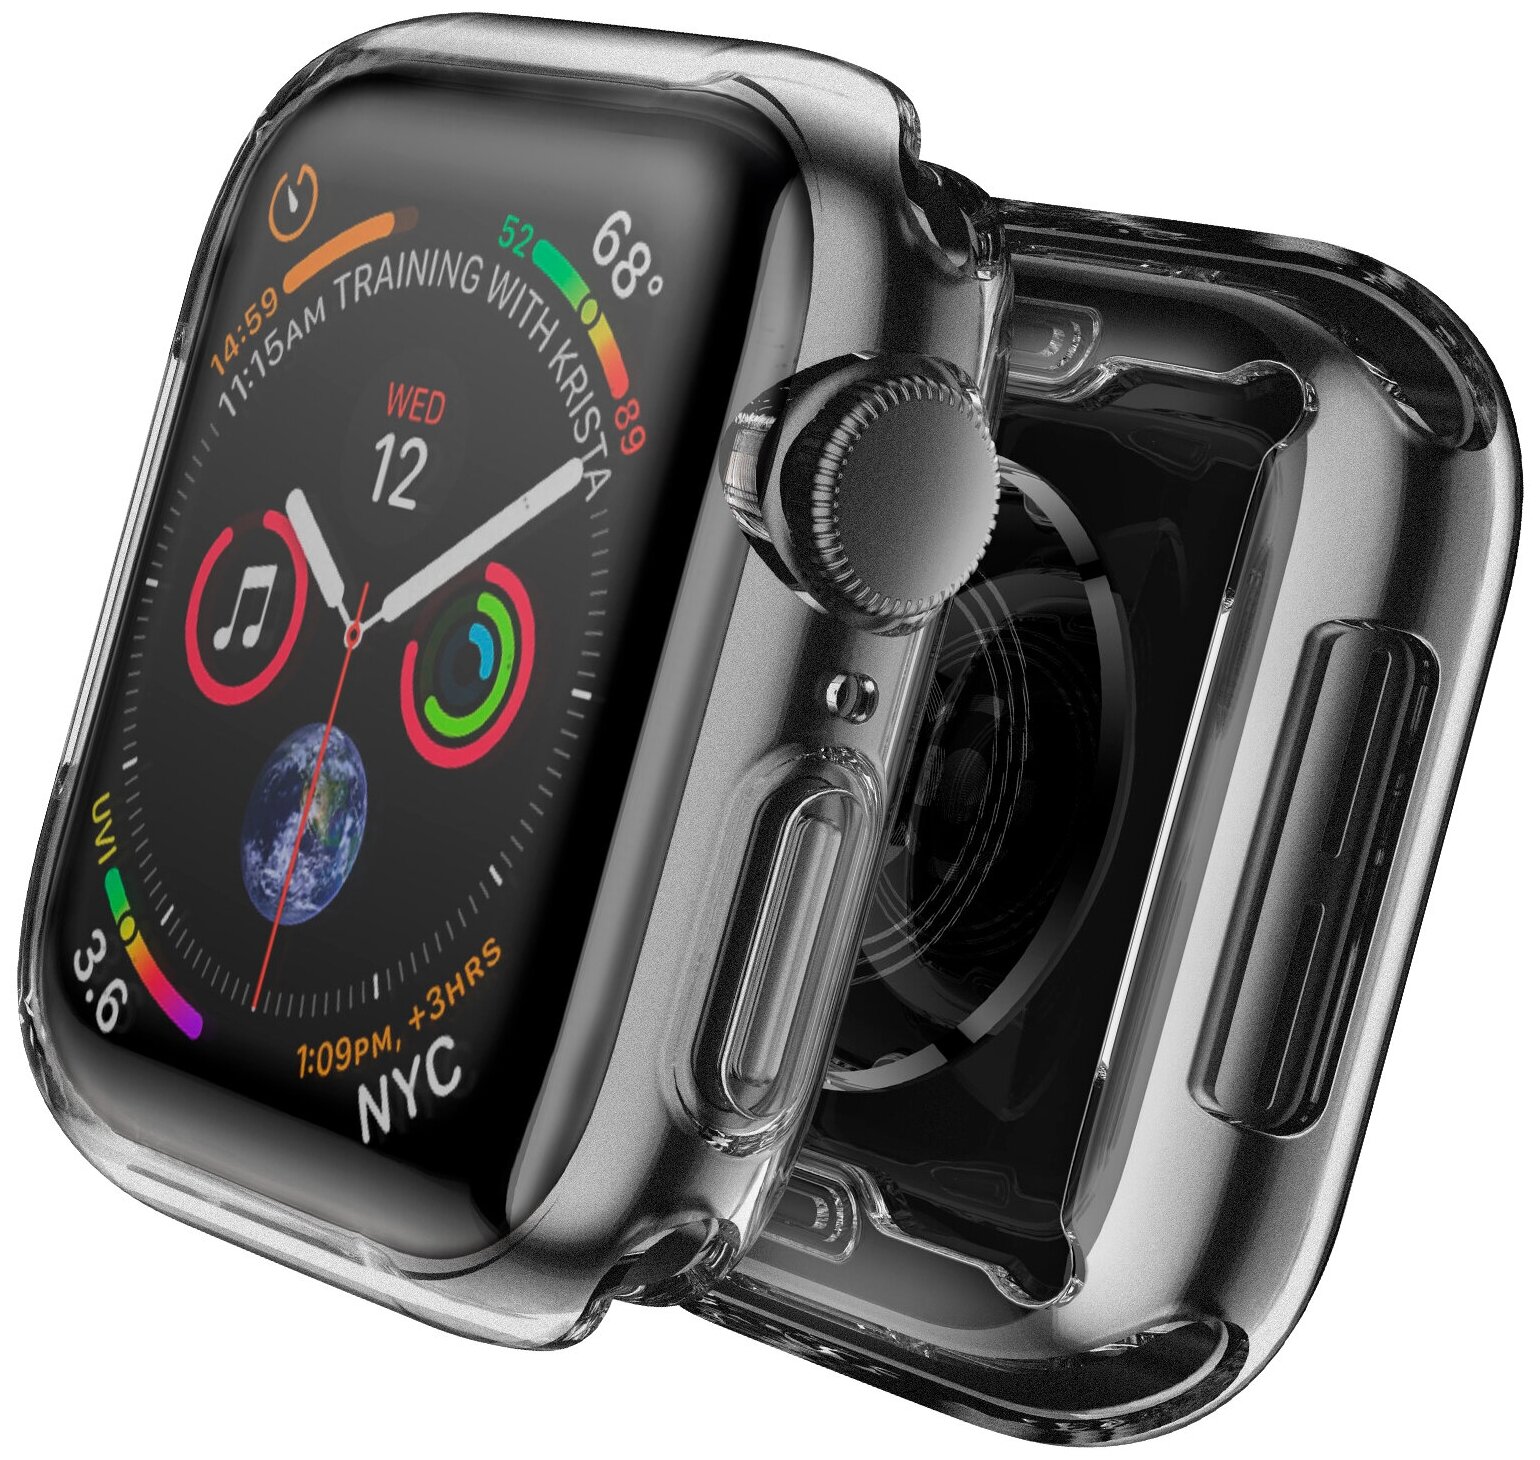 Чехол на смарт часы Apple Watch 1/2/3 диагональю экрана 42 мм Luckroute - Противоударный чехол с защитой от повреждений - Защитный кейс